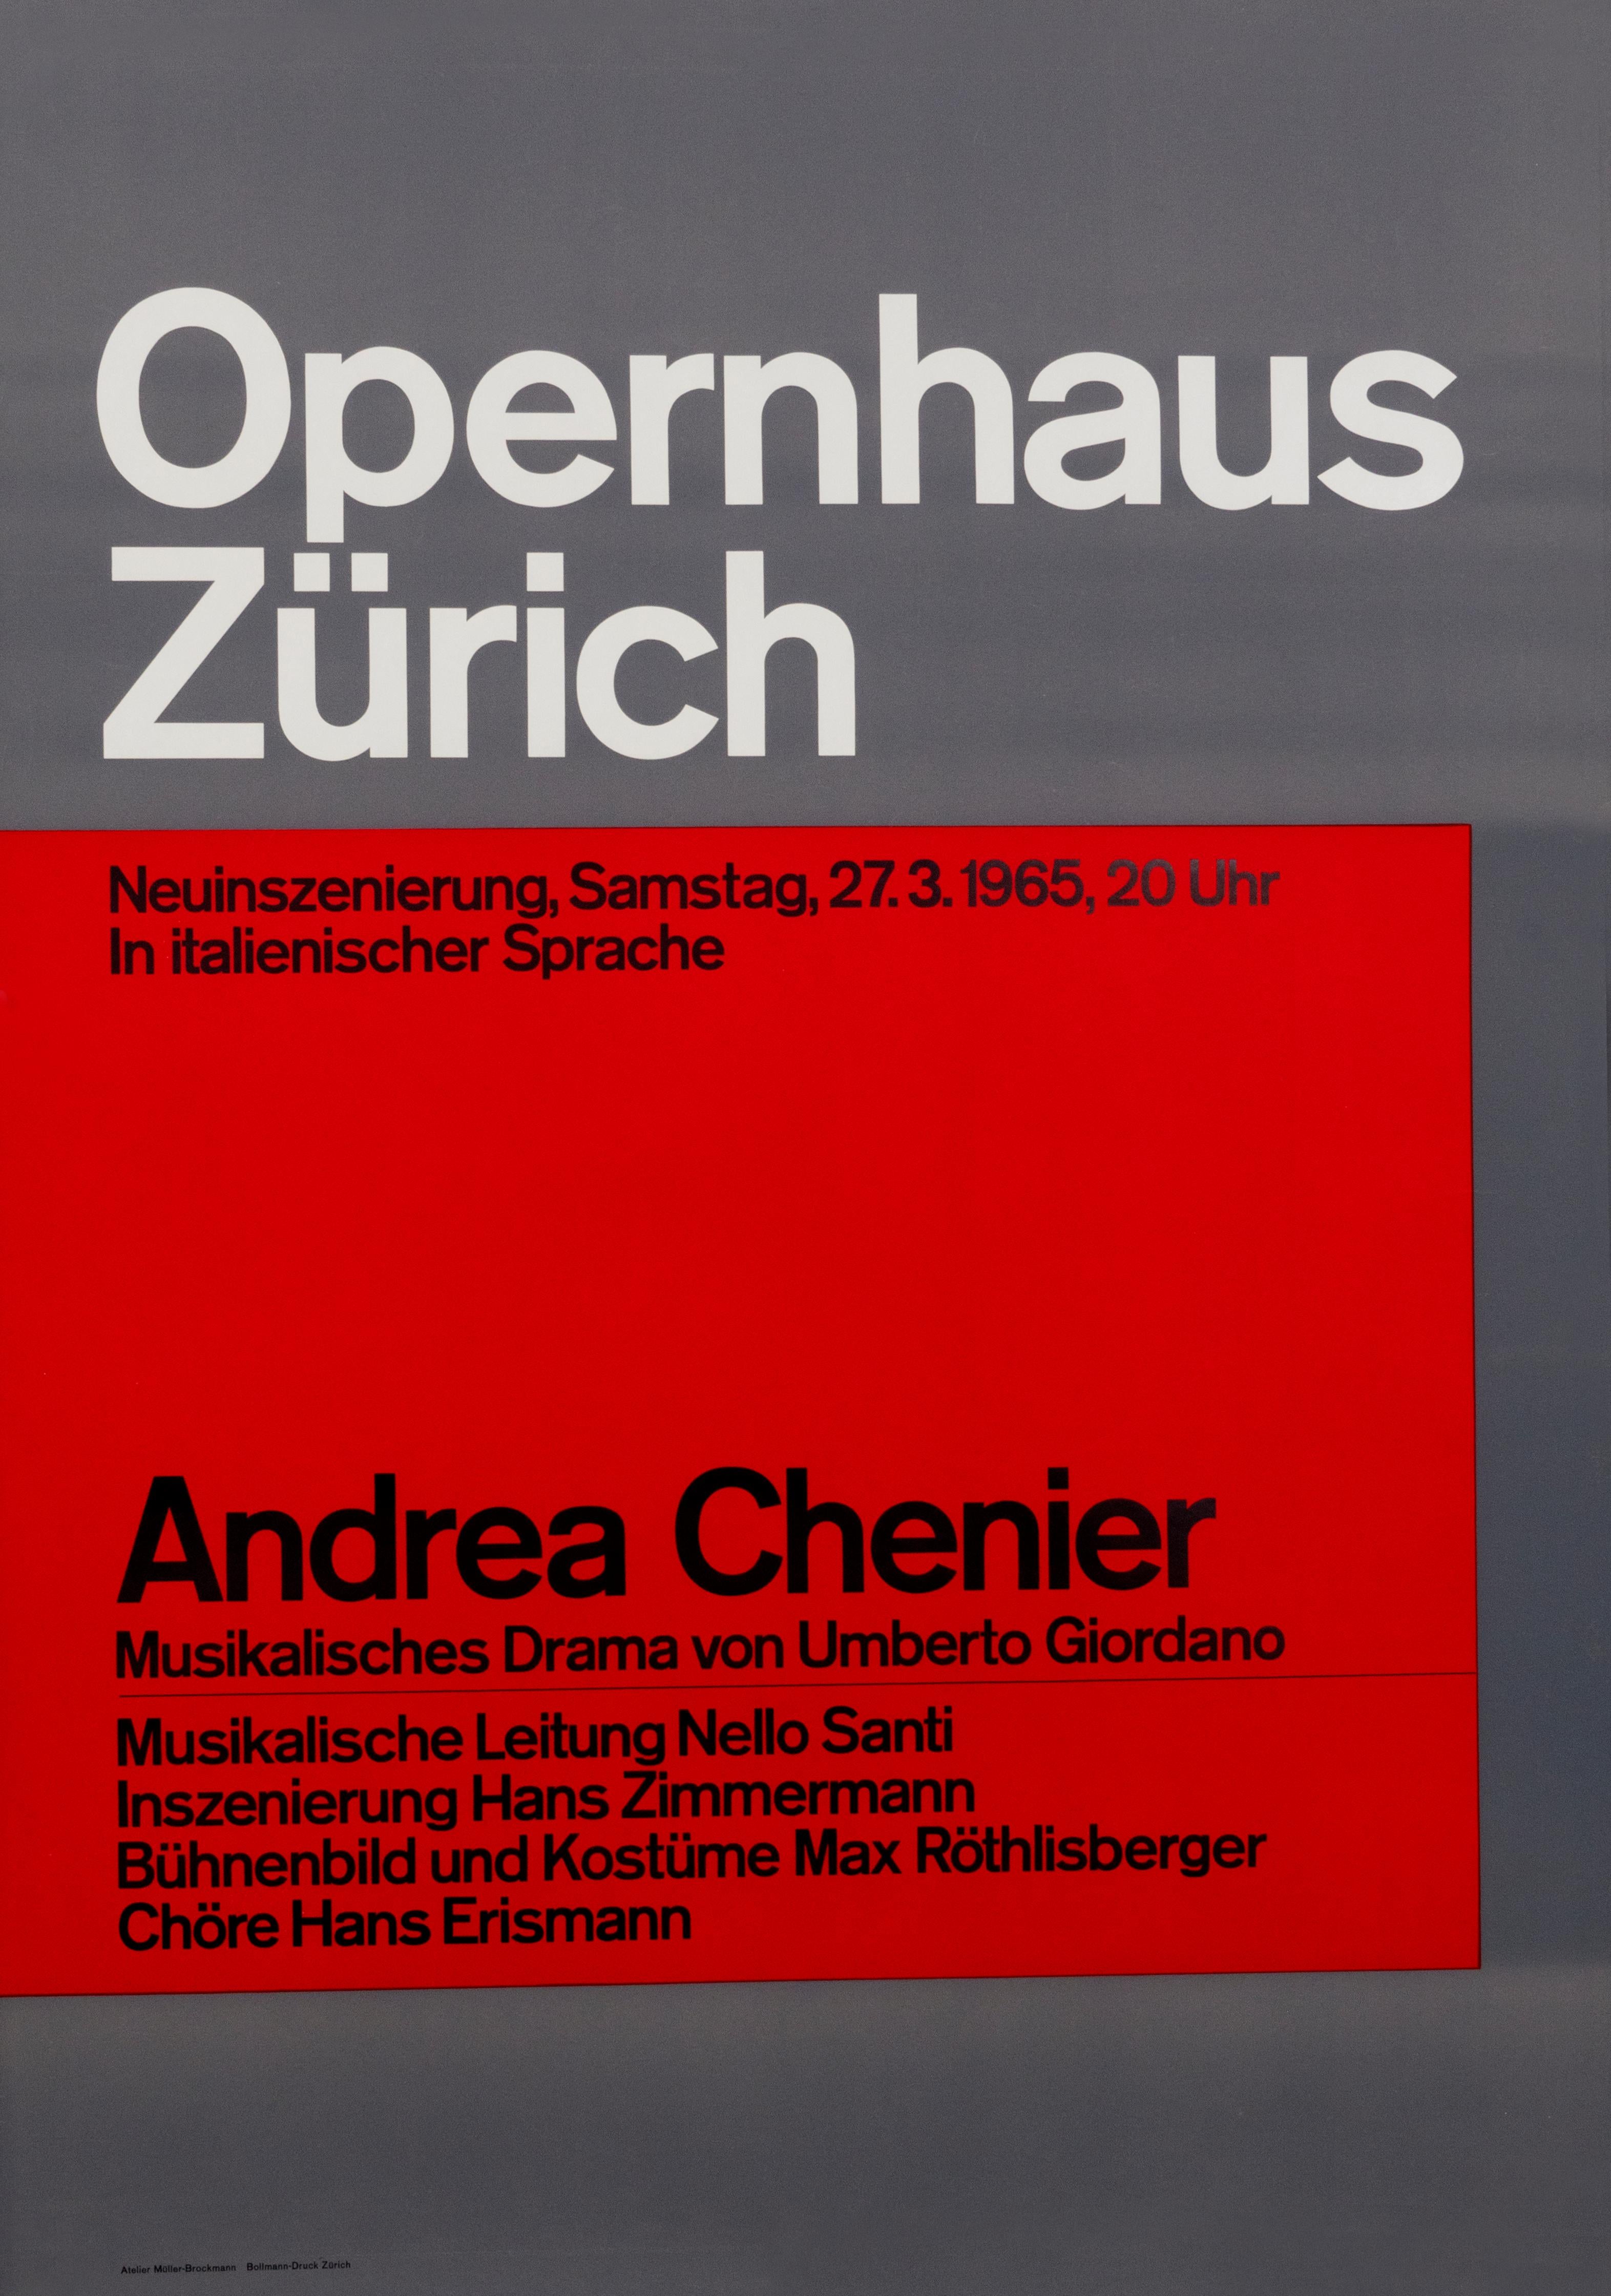 "Opernhaus Zurich - Andrea Chenier" Opera Typographic Original Vintage Poster - Print by Josef Müller-Brockmann